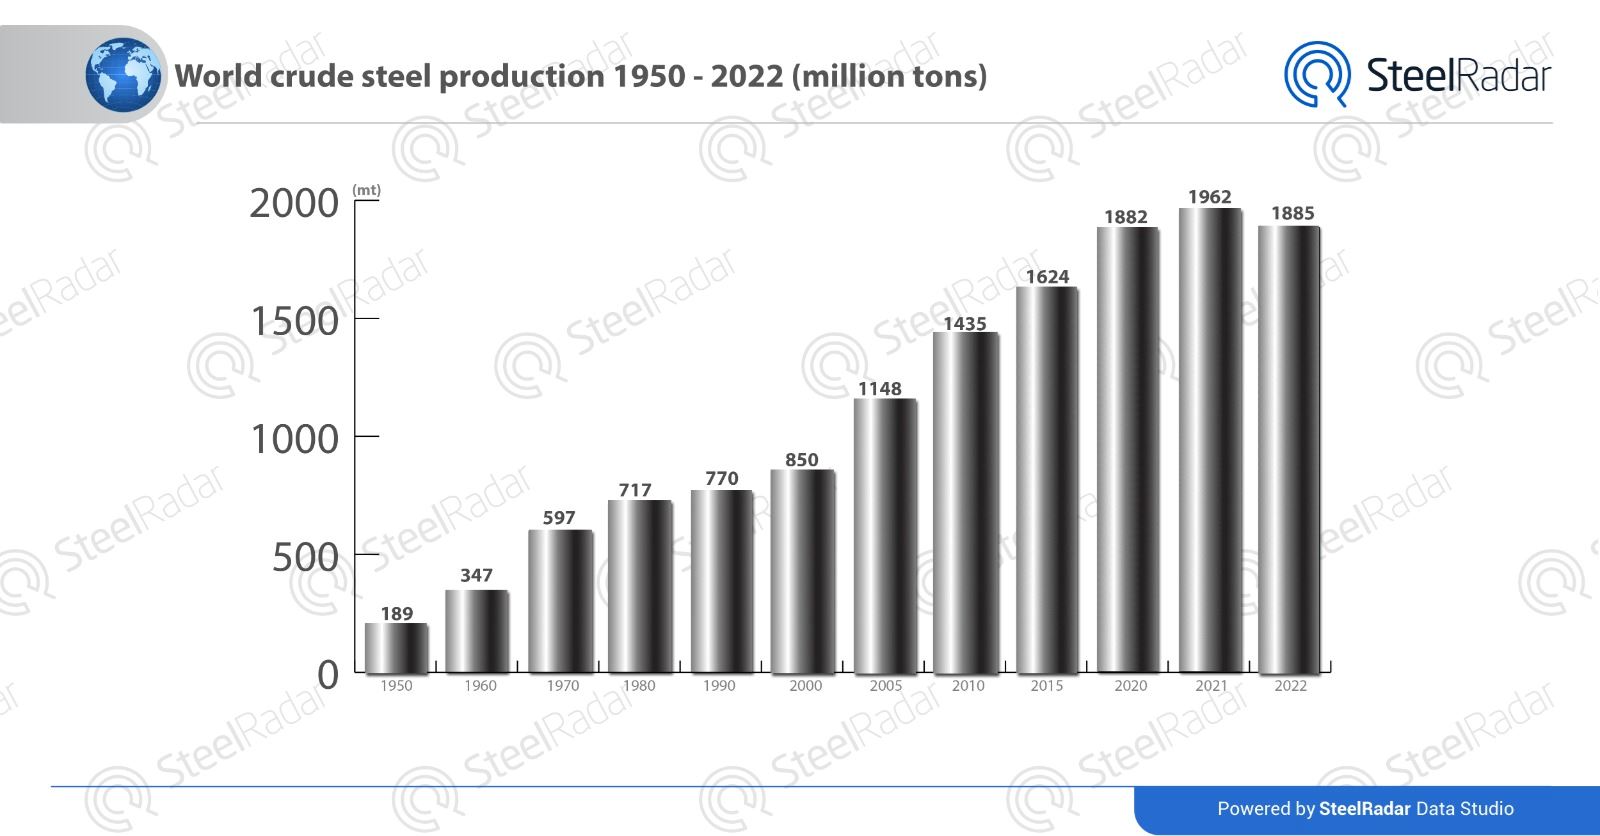 Steel industry in the global market since 1950